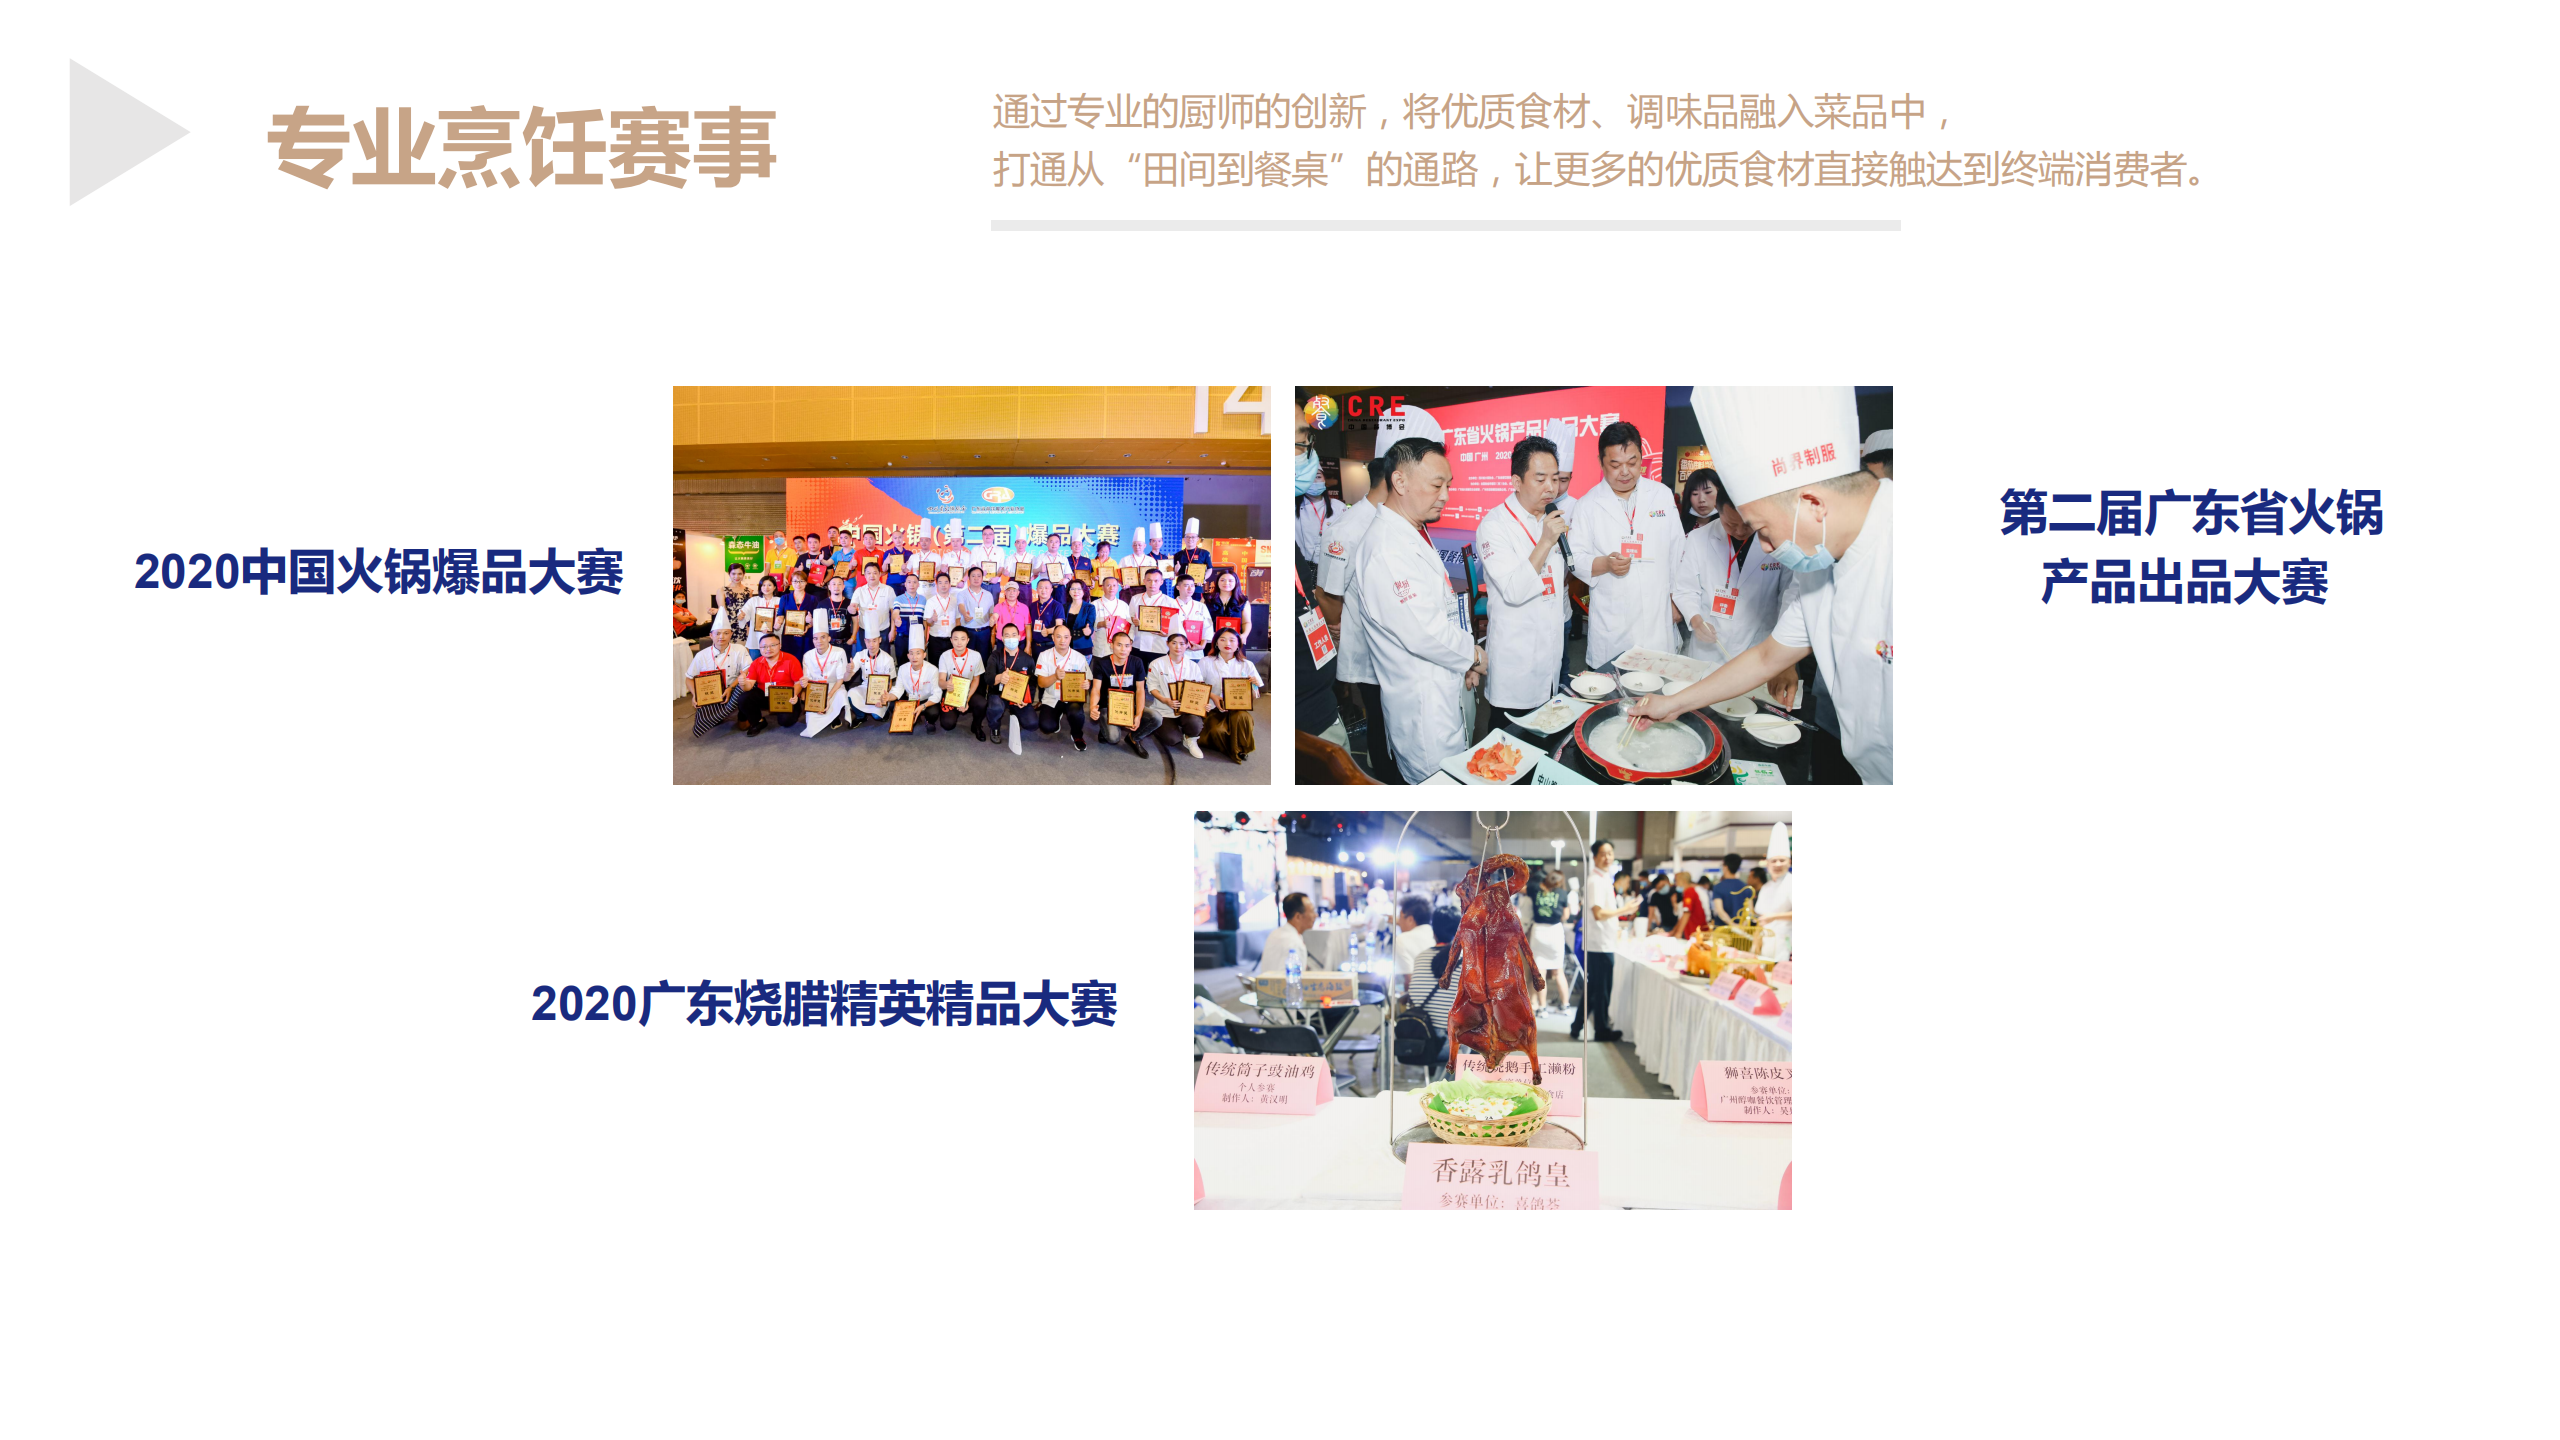 2020第十一届中国餐博会展后报告1_13.png